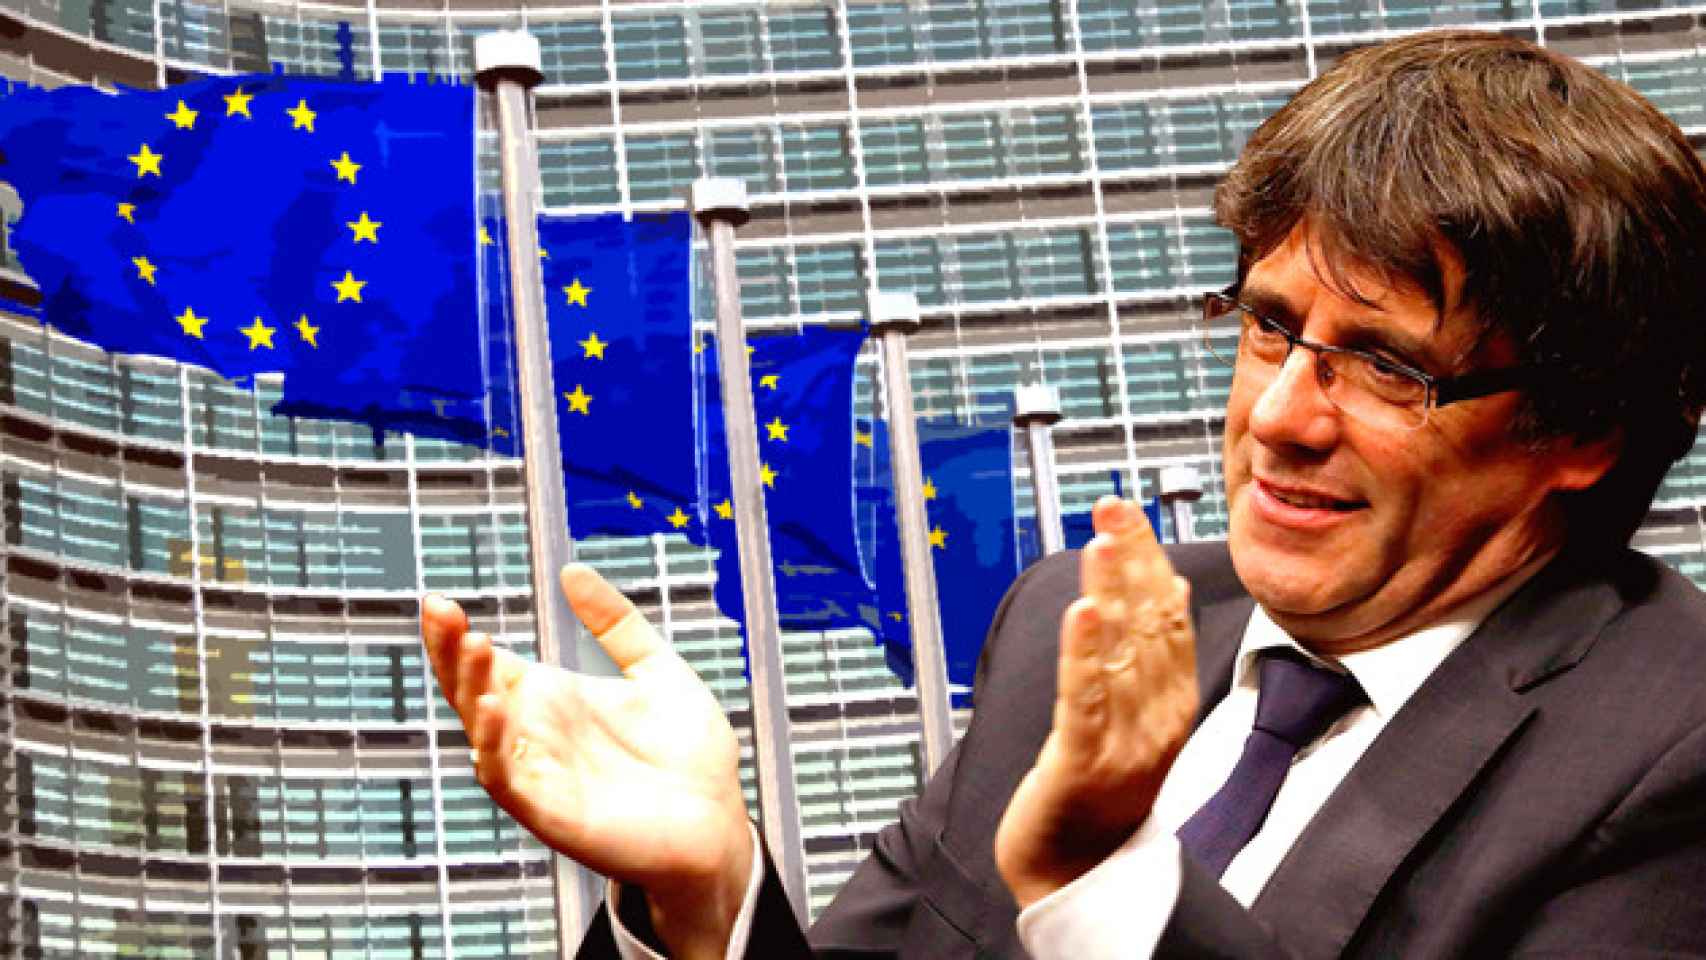 Carles Puigdemont y las banderas europeas en frente del edificio Berlaymont / FOTOMONTAJE DE CG